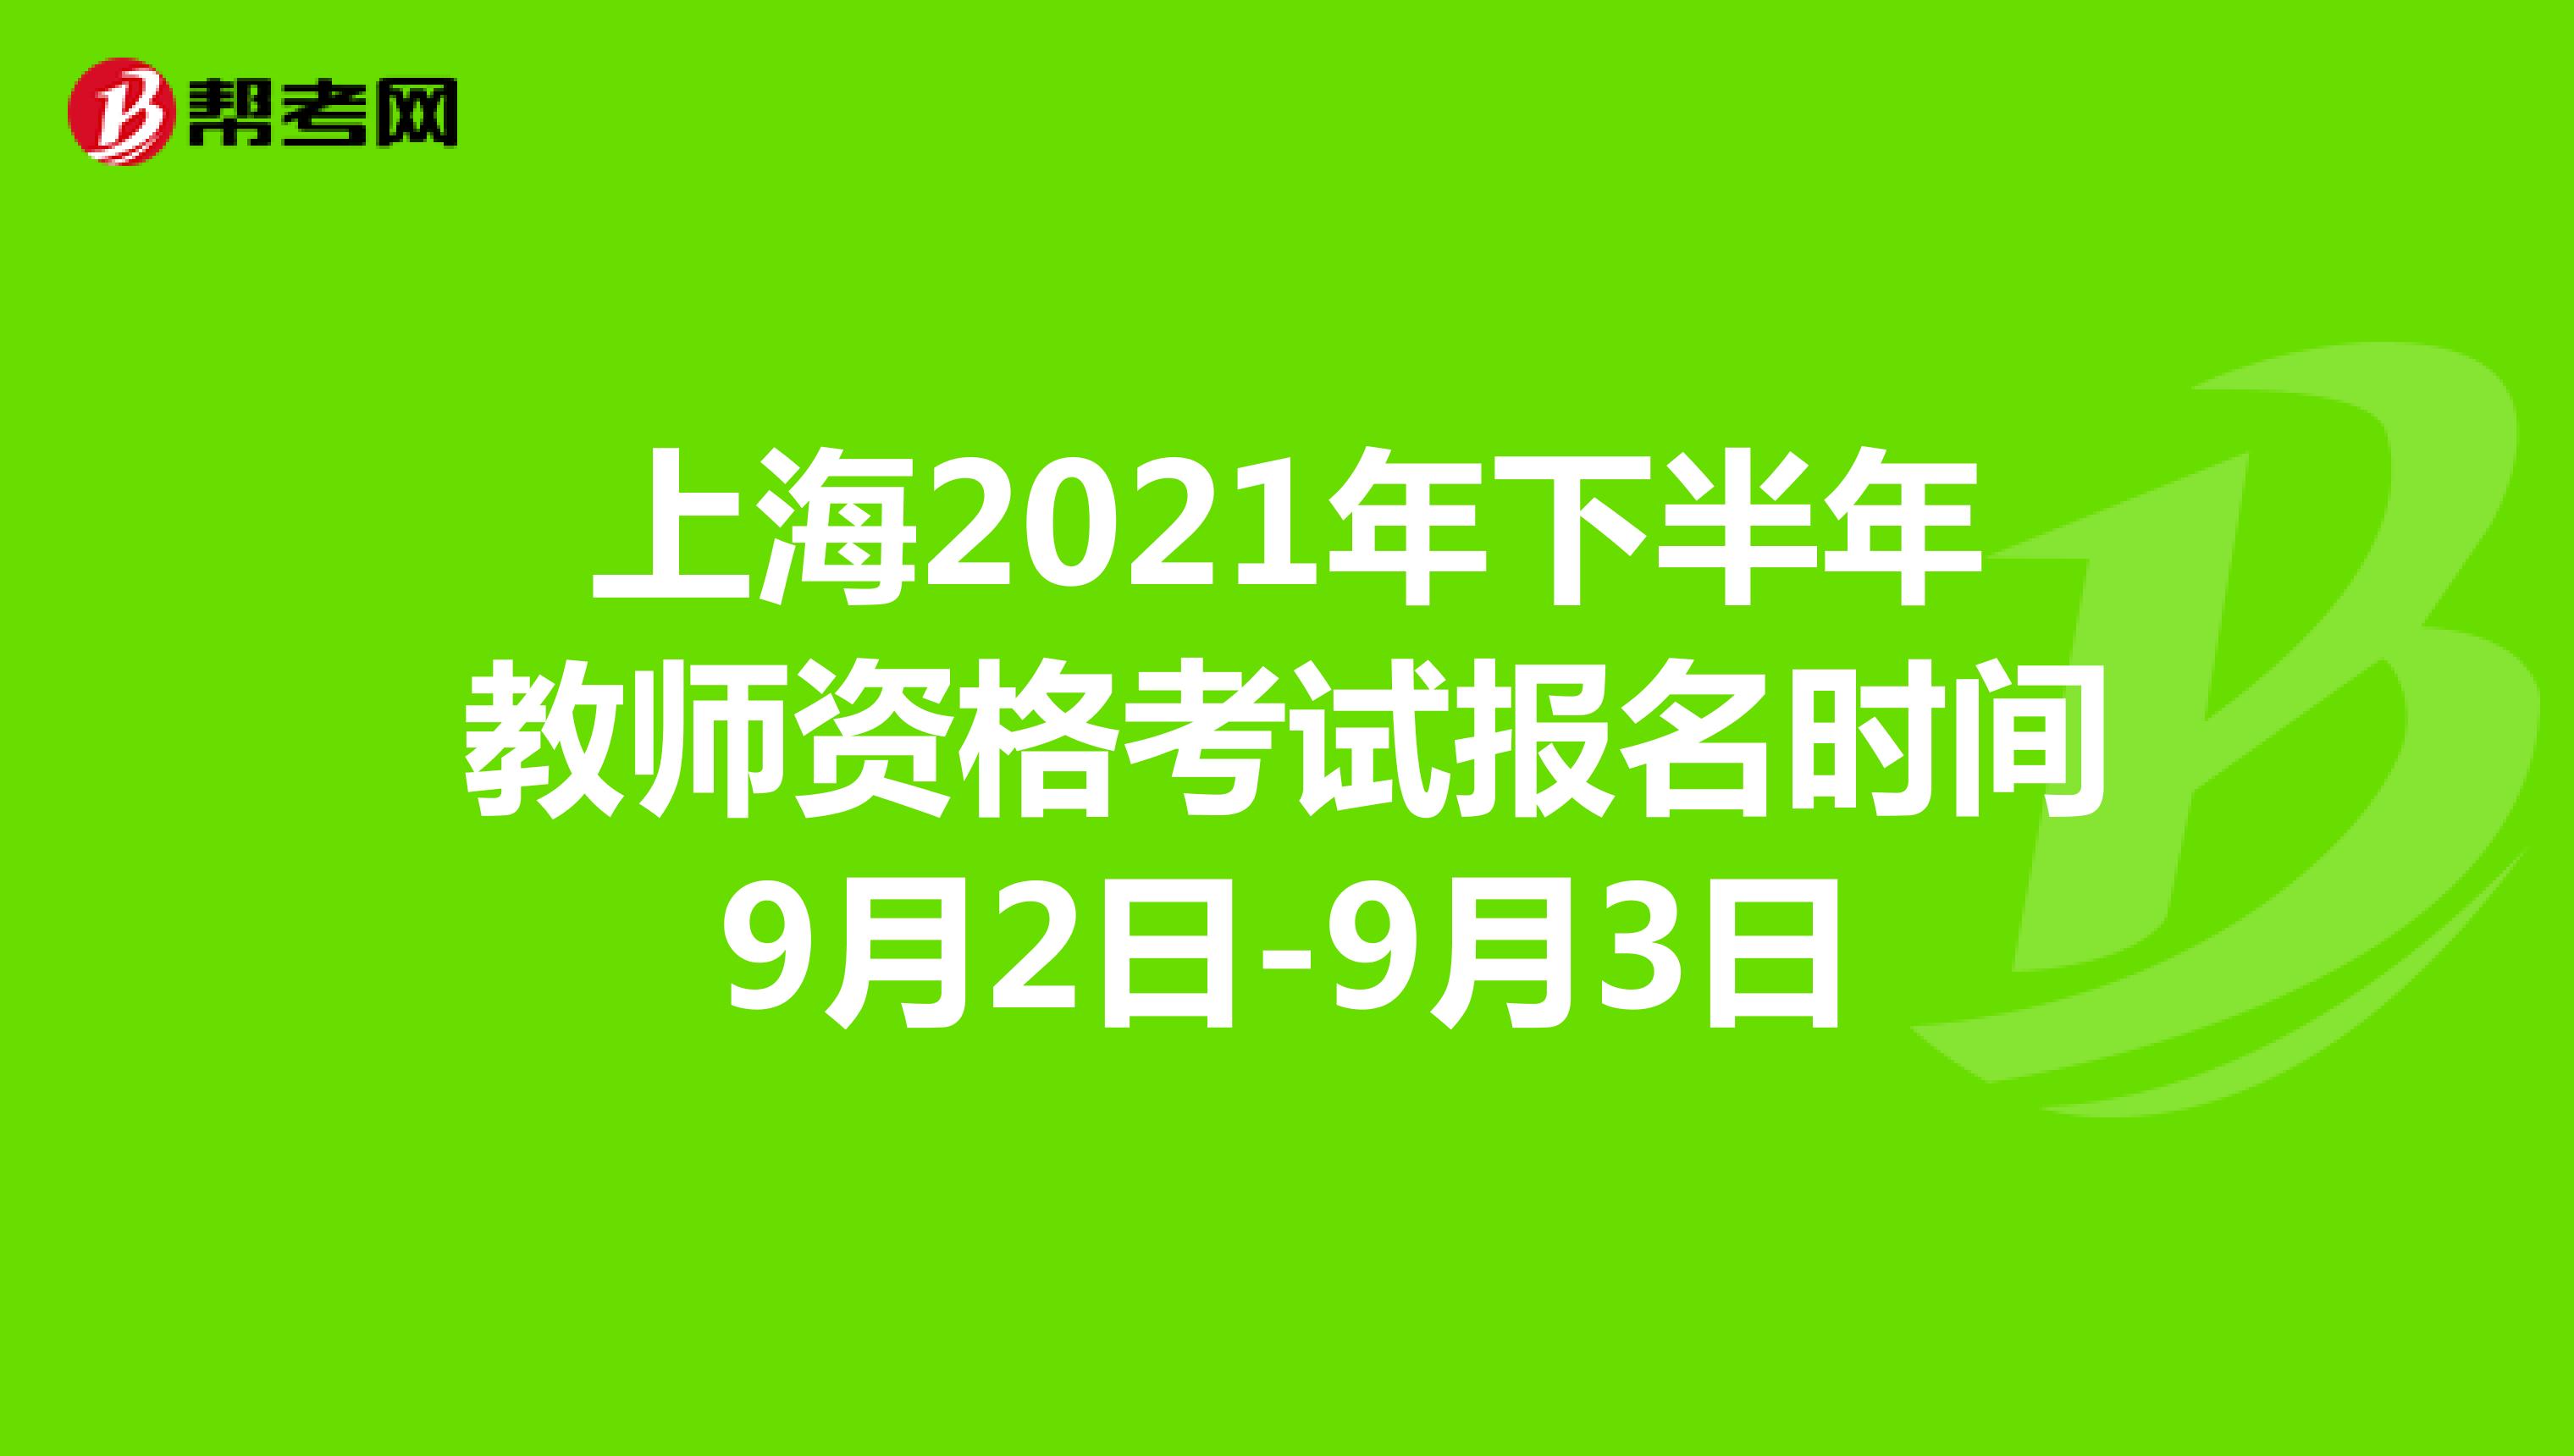 上海2021年下半年教师资格考试报名时间9月2日-9月3日